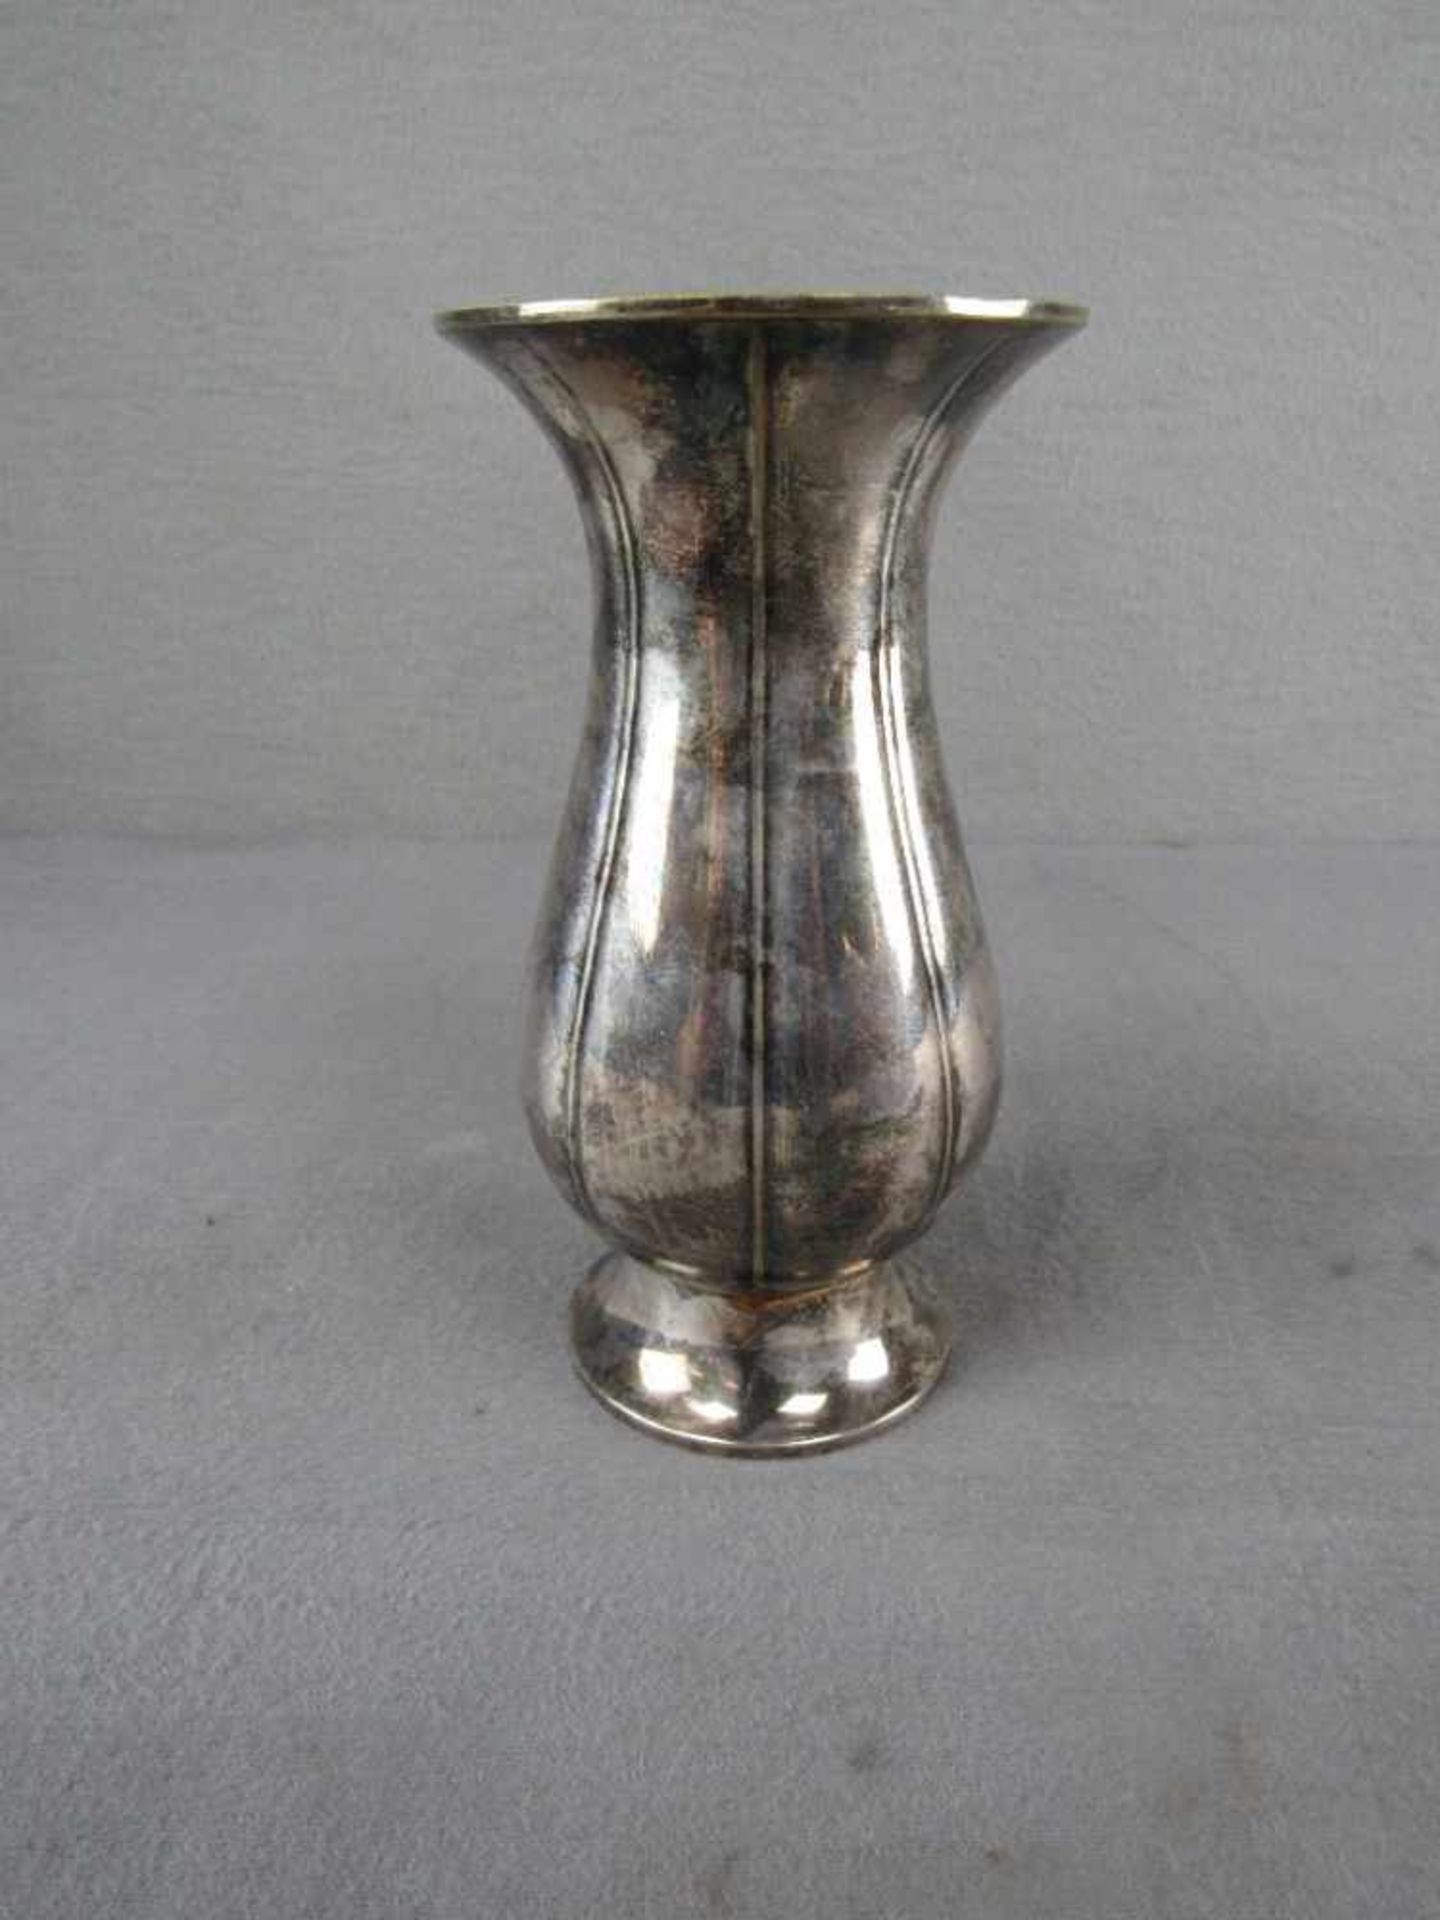 Art Deco versilberte Vase WMF 18,5cm hoch- - -20.00 % buyer's premium on the hammer price19.00 % VAT